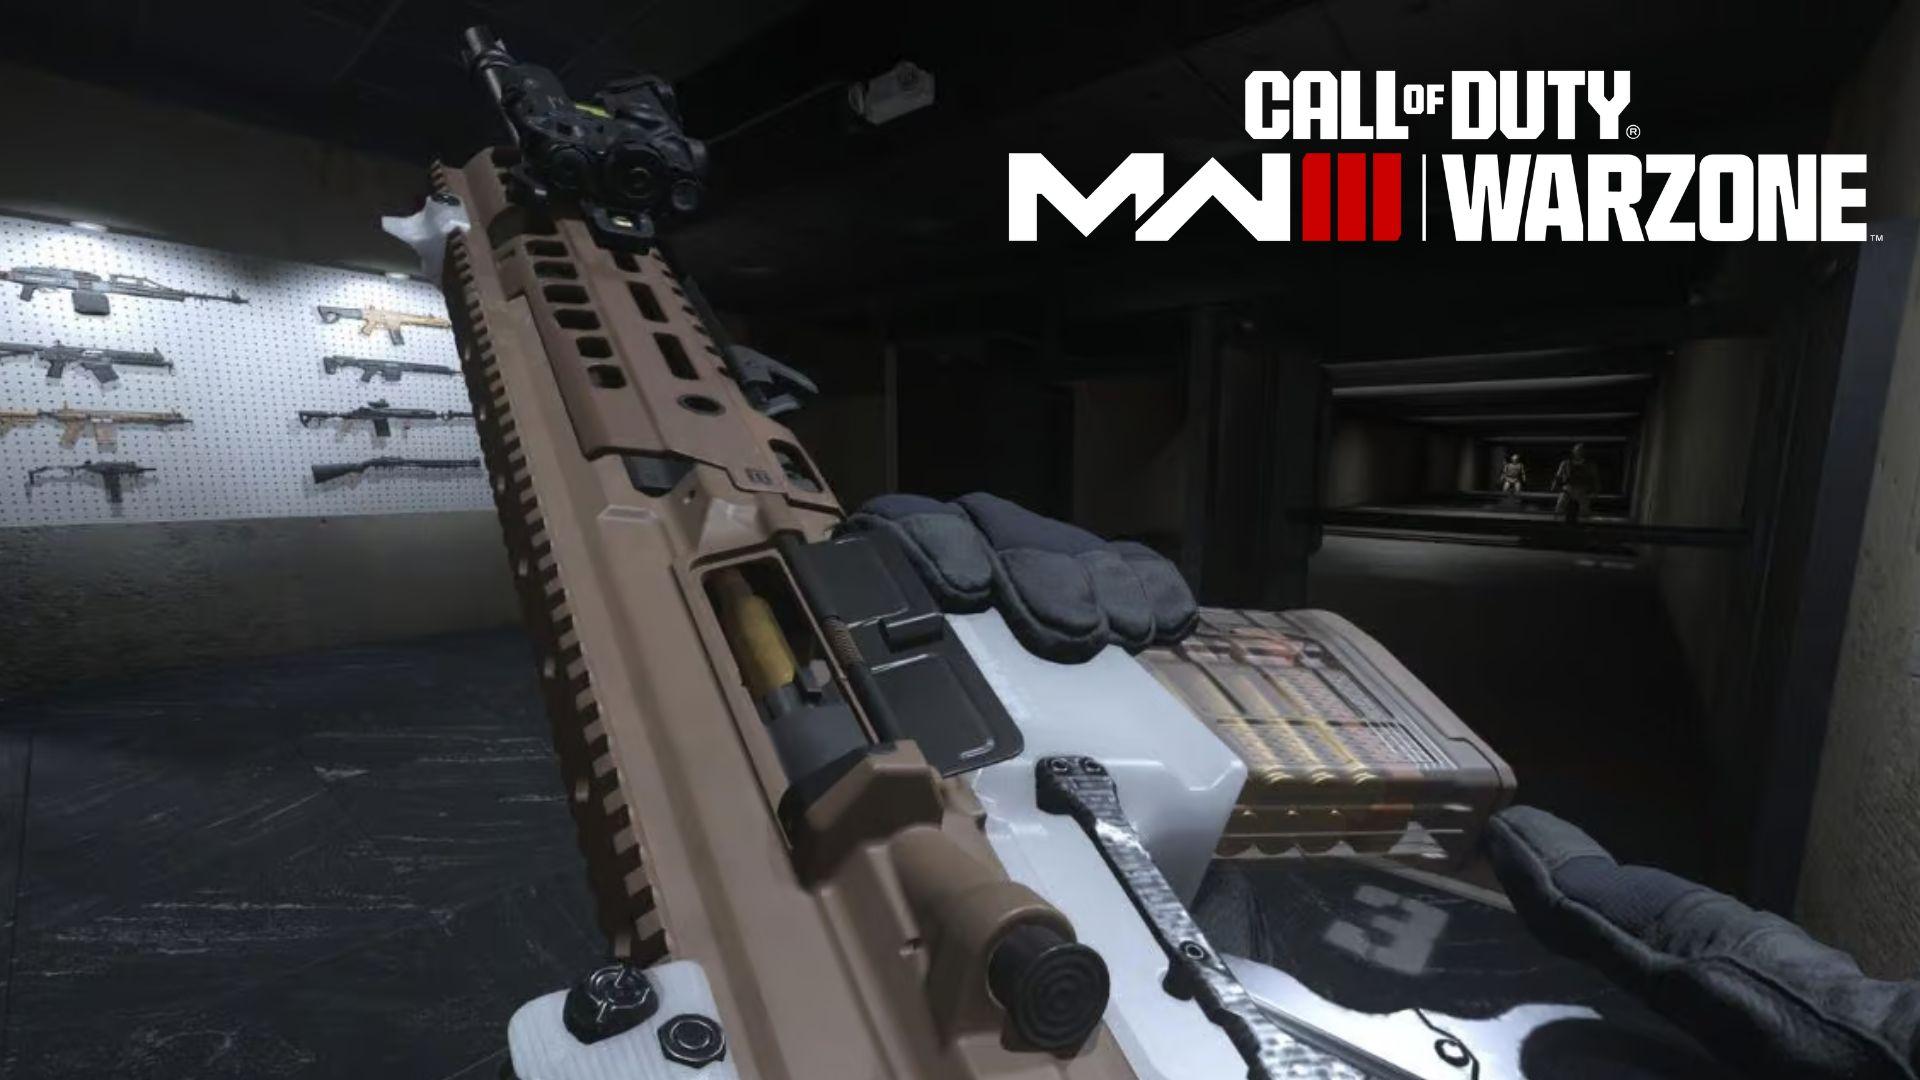 Sidewinder rifle being reloaded in Modern Warfare 3 firing range